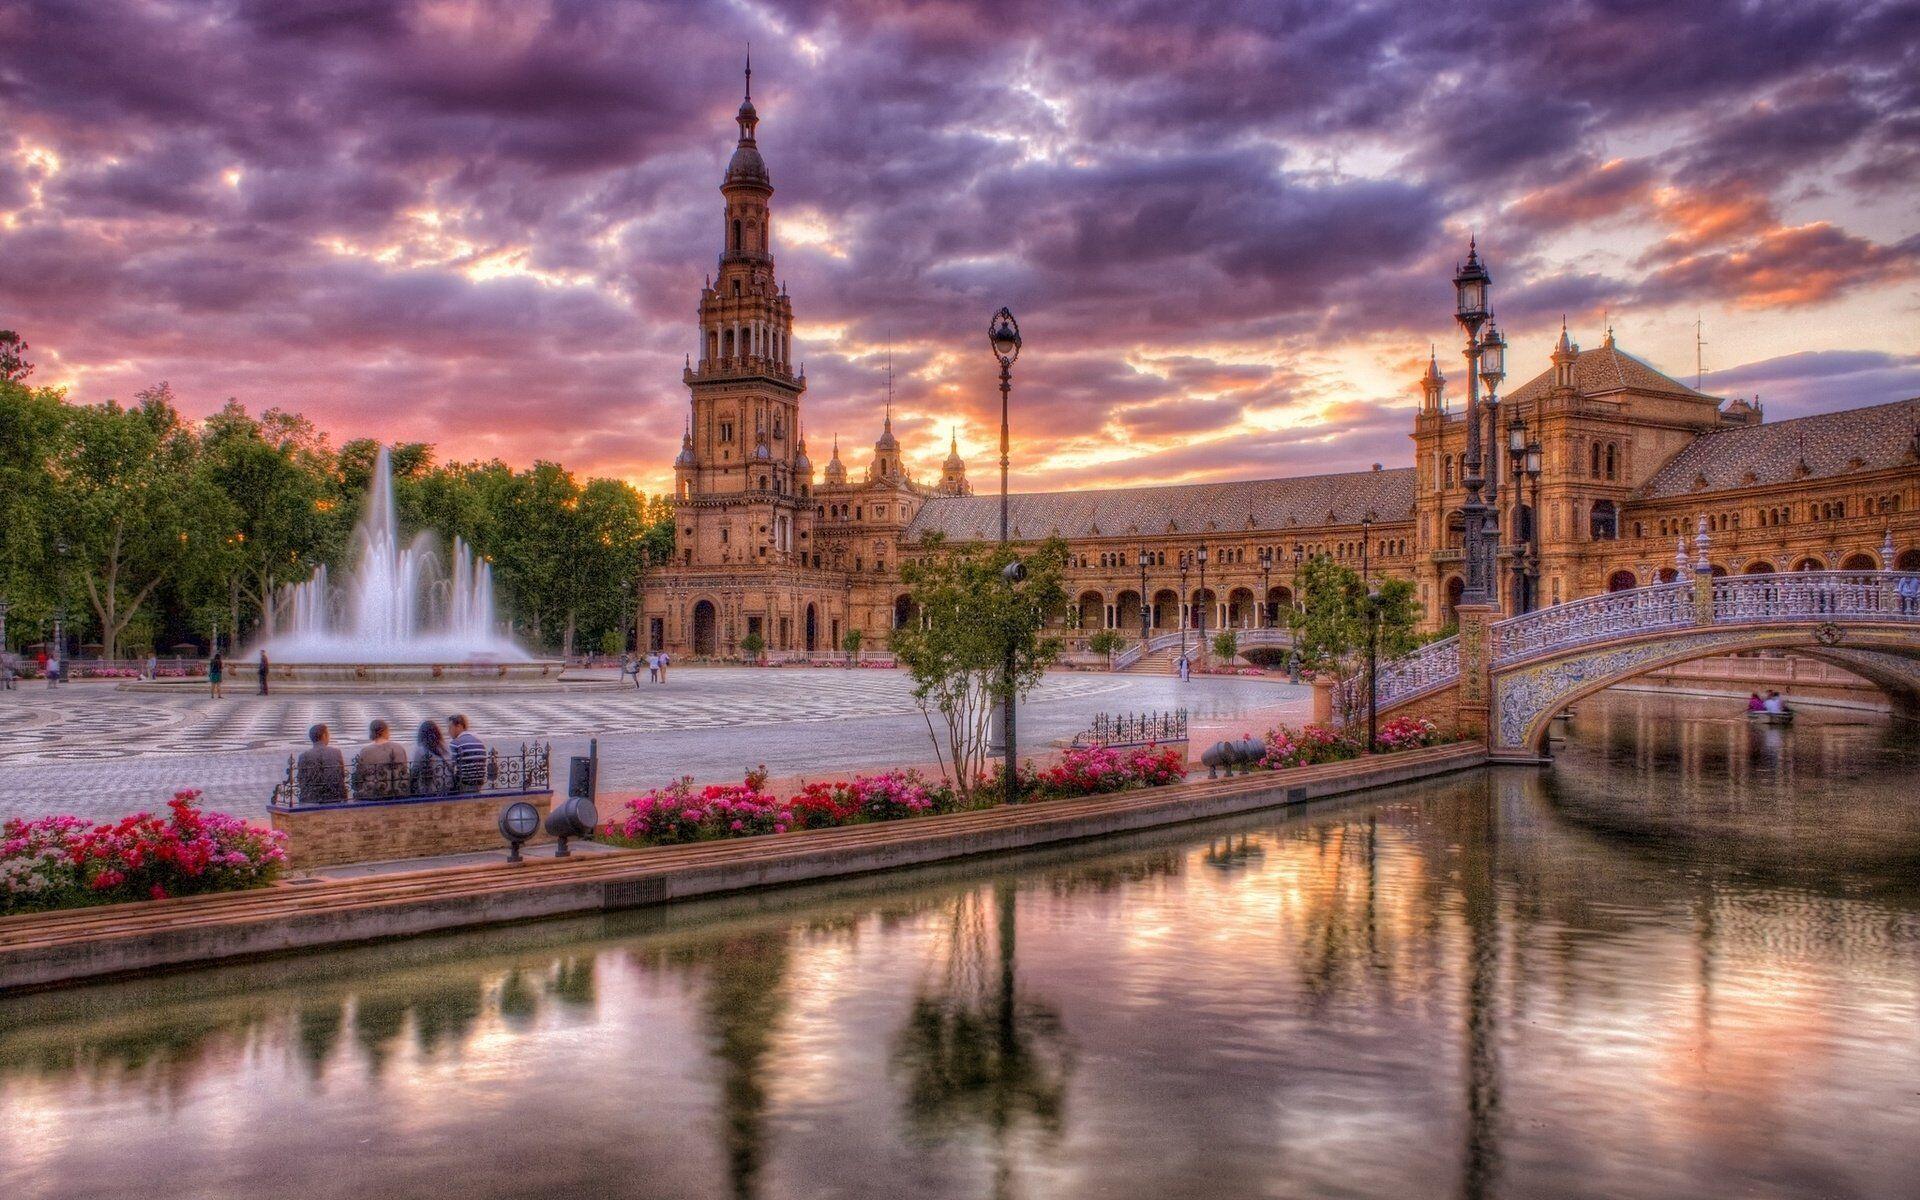 Seville, hình nền thành phố Tây Ban Nha - Top Hình Ảnh Đẹp